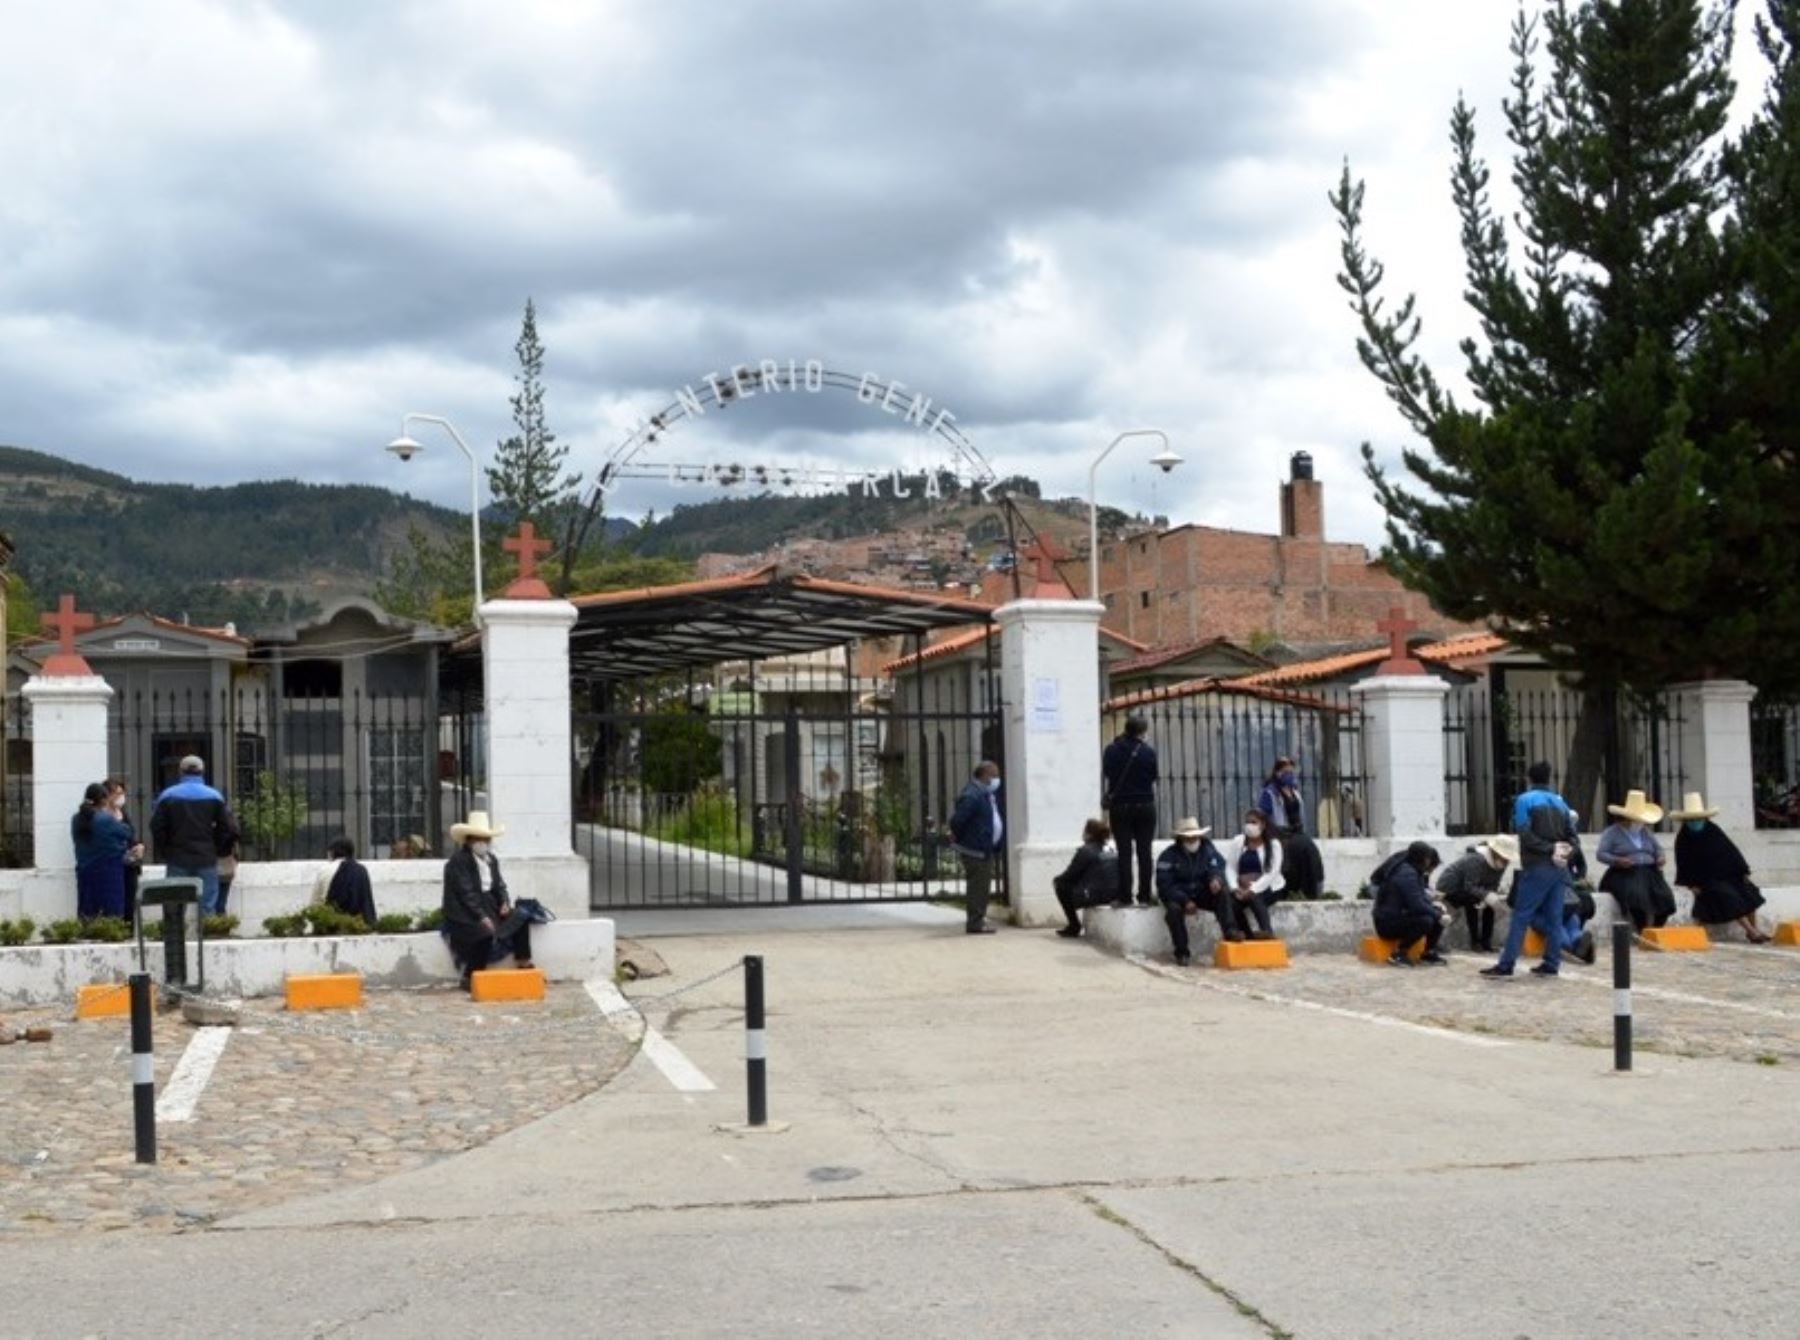 El cementerio de Cajamarca ampliará su aforo y permitirá el ingreso de 1,500 personas al día durante el feriado largo de este fin de semana. Foto: ANDINA/difusión.